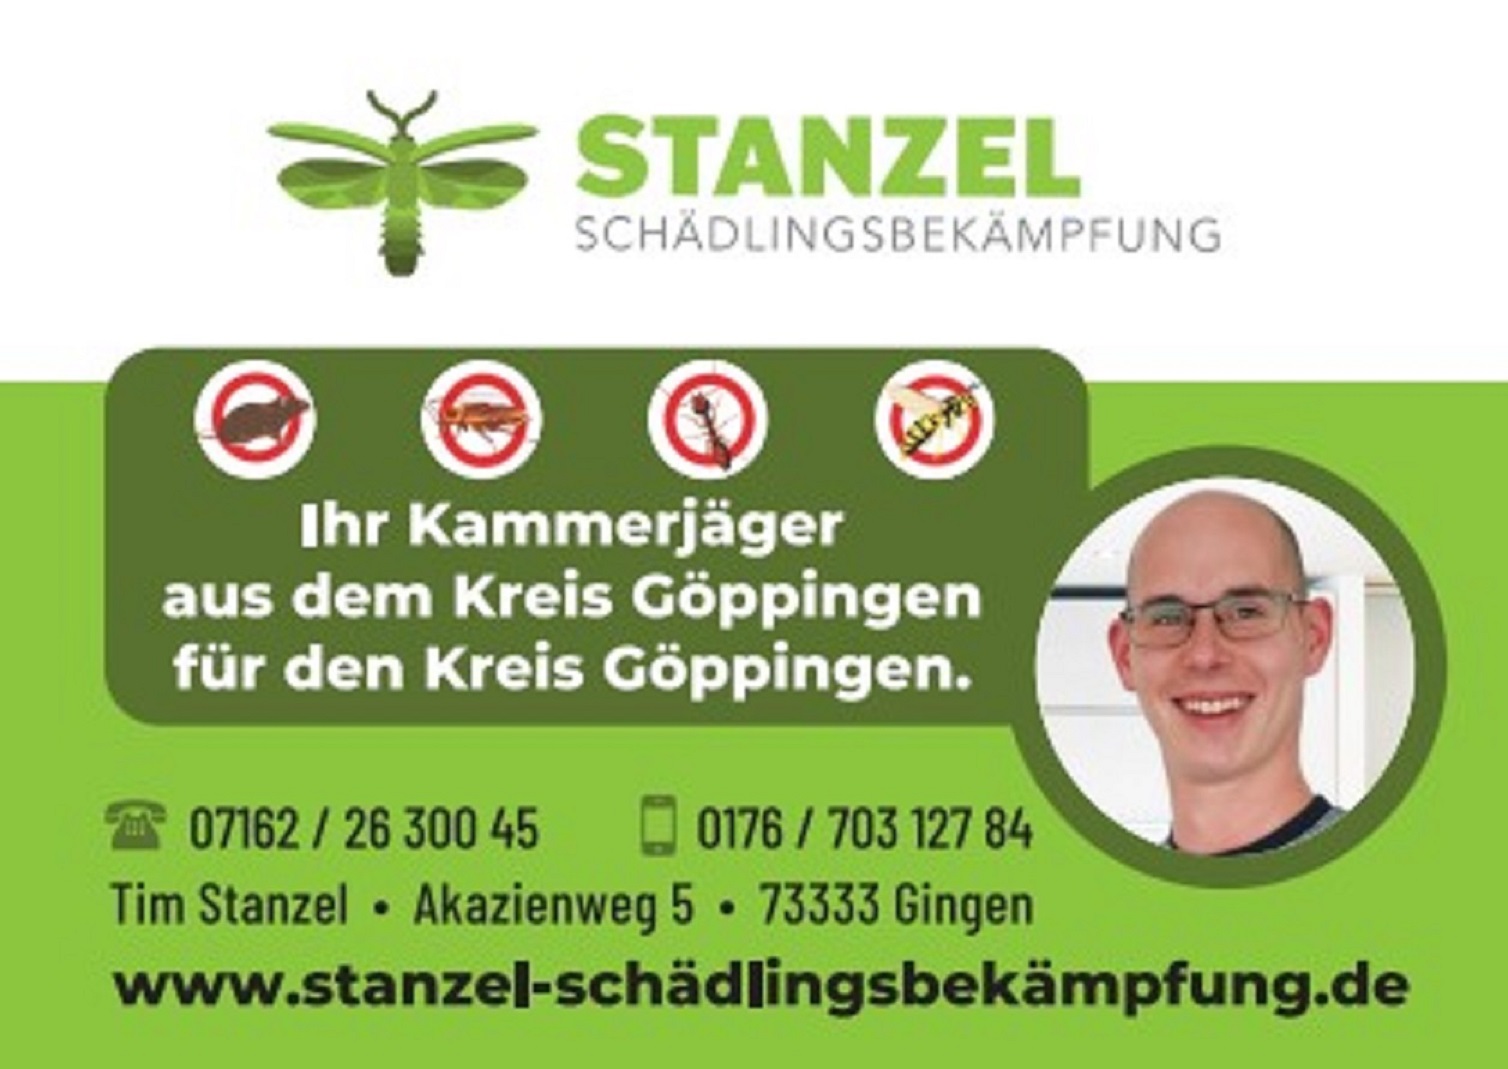 Bild 2 Stanzel Schädlingsbekämpfung in Gingen an der Fils